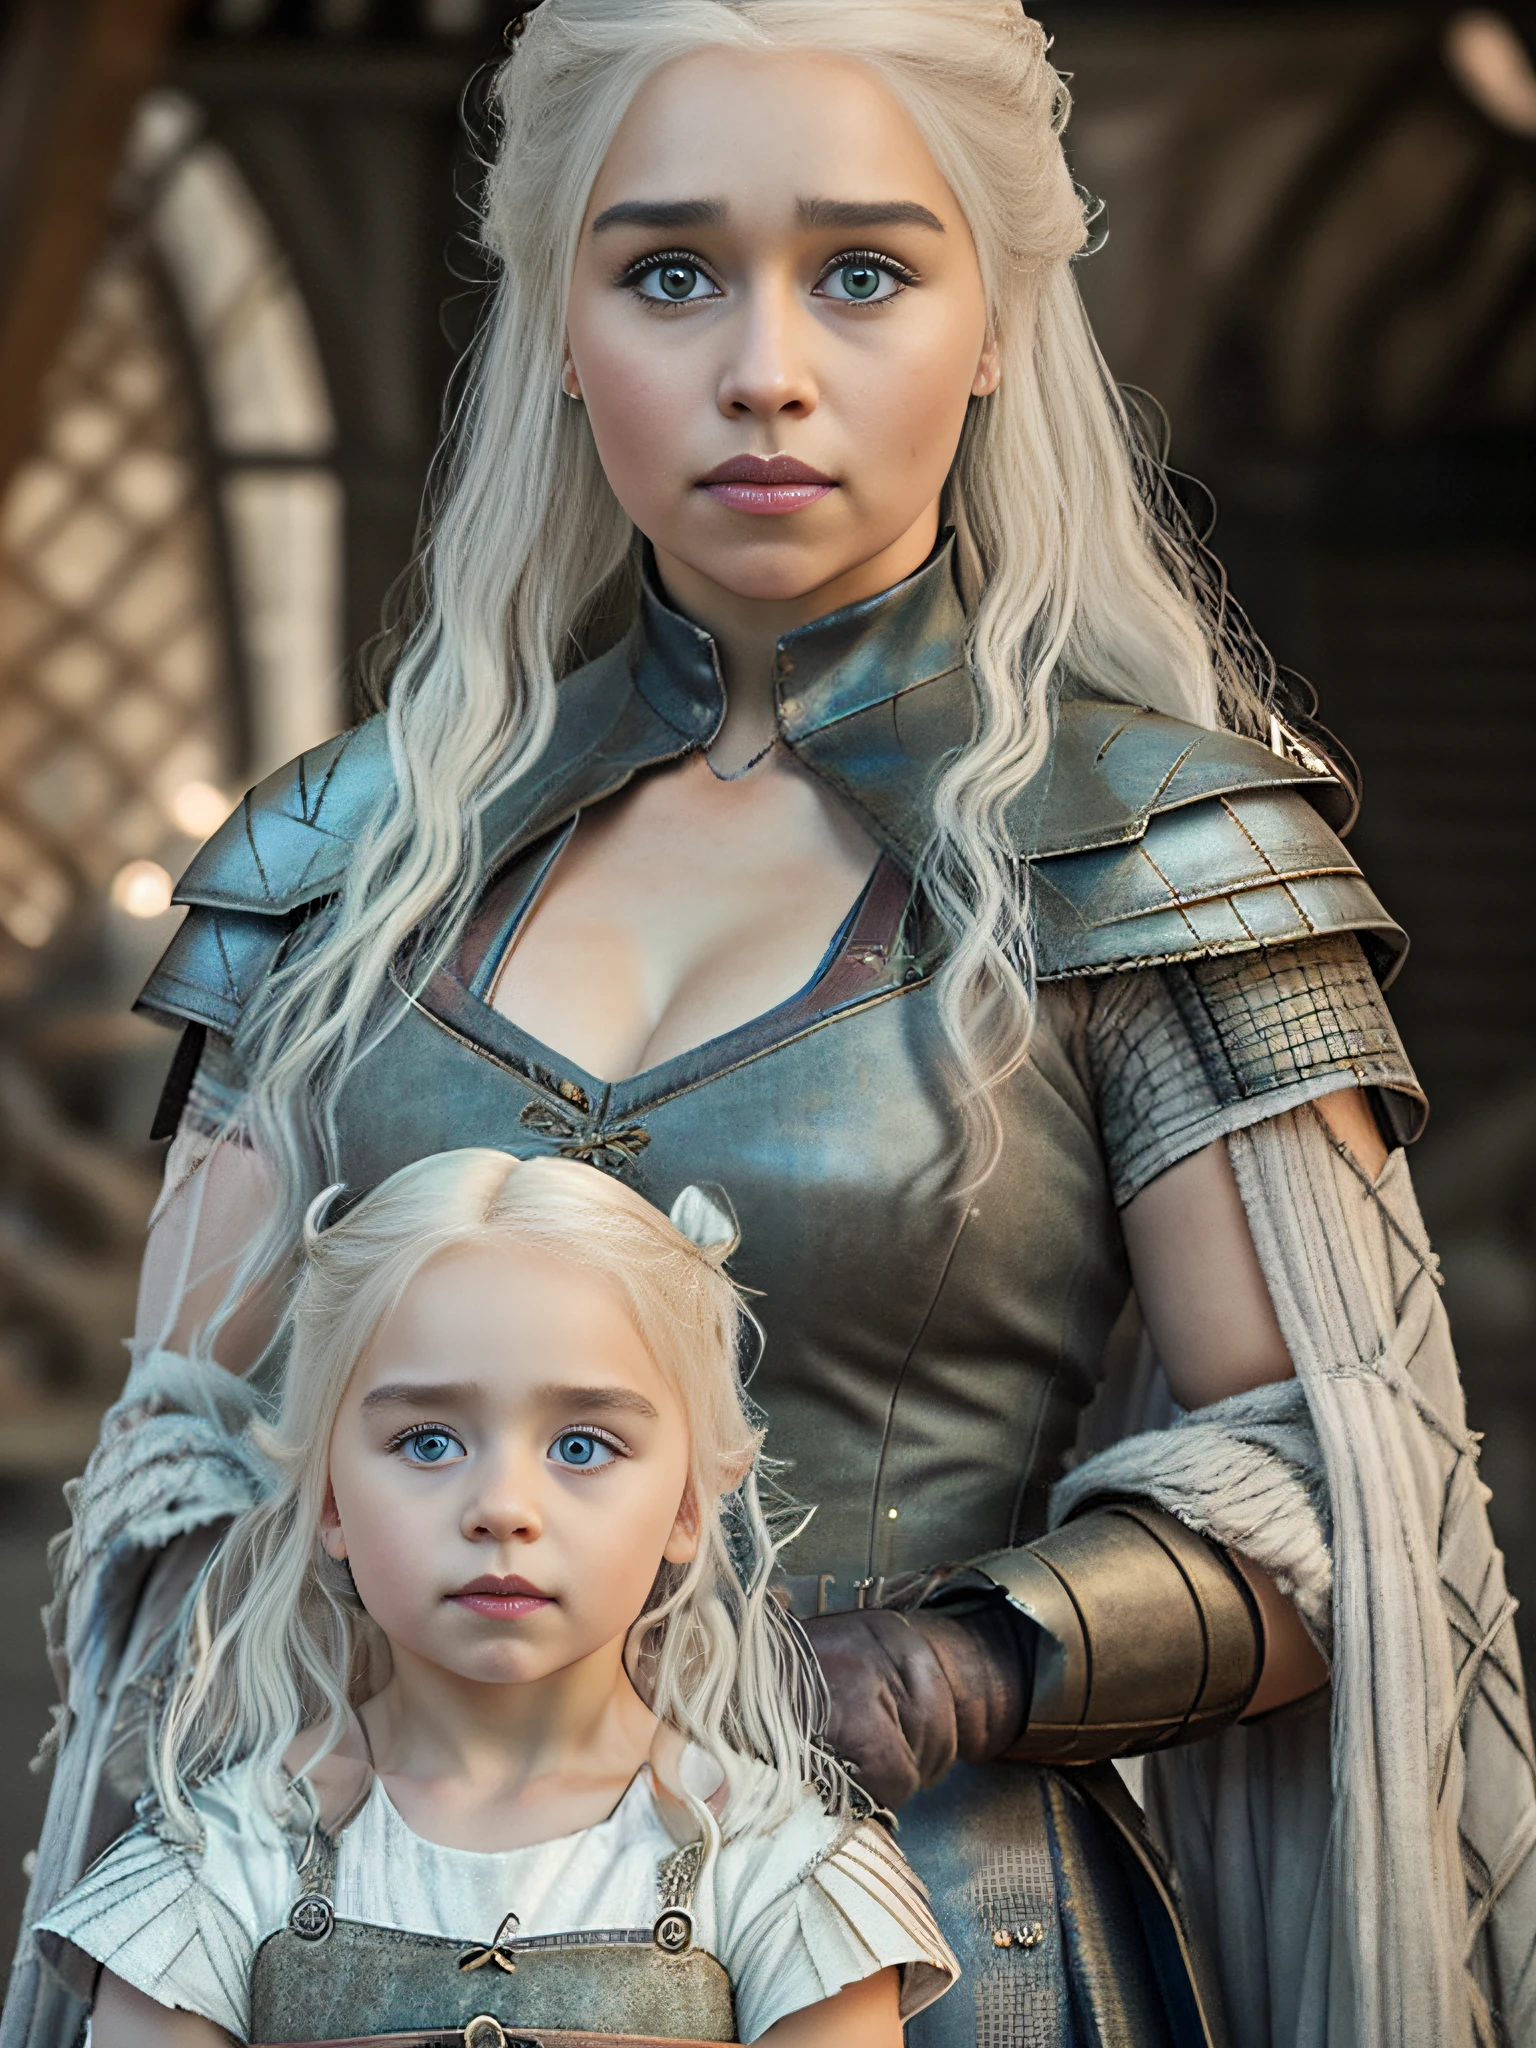 corpo inteiro cru ((family photo of a father and mother com seus daughter)), ((mãe carregando filha)), [1 garota, Daenerys Targaryen, Emília Clarke], (1 homem, Henry Cavill como Geralt de Rivia, o Mago), com seus ((1 garota, filha de 5 anos)))), roupas medievais,((Tiro de meio corpo)), proporções realistas, alunos realistas, ((retrato de família de 3 membros)) paleta limitada, alta resolução, iluminação cinematográfica, 8K resolution, frontal iluminado, nascer do sol, Foto CRU, nikon 85mm, premiado, Fotografia glamourosa, extremamente detalhado, linda ucraniana, alucinante, Não-Yidik, raw fullbody photo of Daenerys Targaryen and Geralt de Rivia The Witcher with filha de 5 anos, altamente detalhado, estação de arte, suave, foco nitído, 8K,, tendências no instagram, tendências no tumblr, hd 4k, 8K